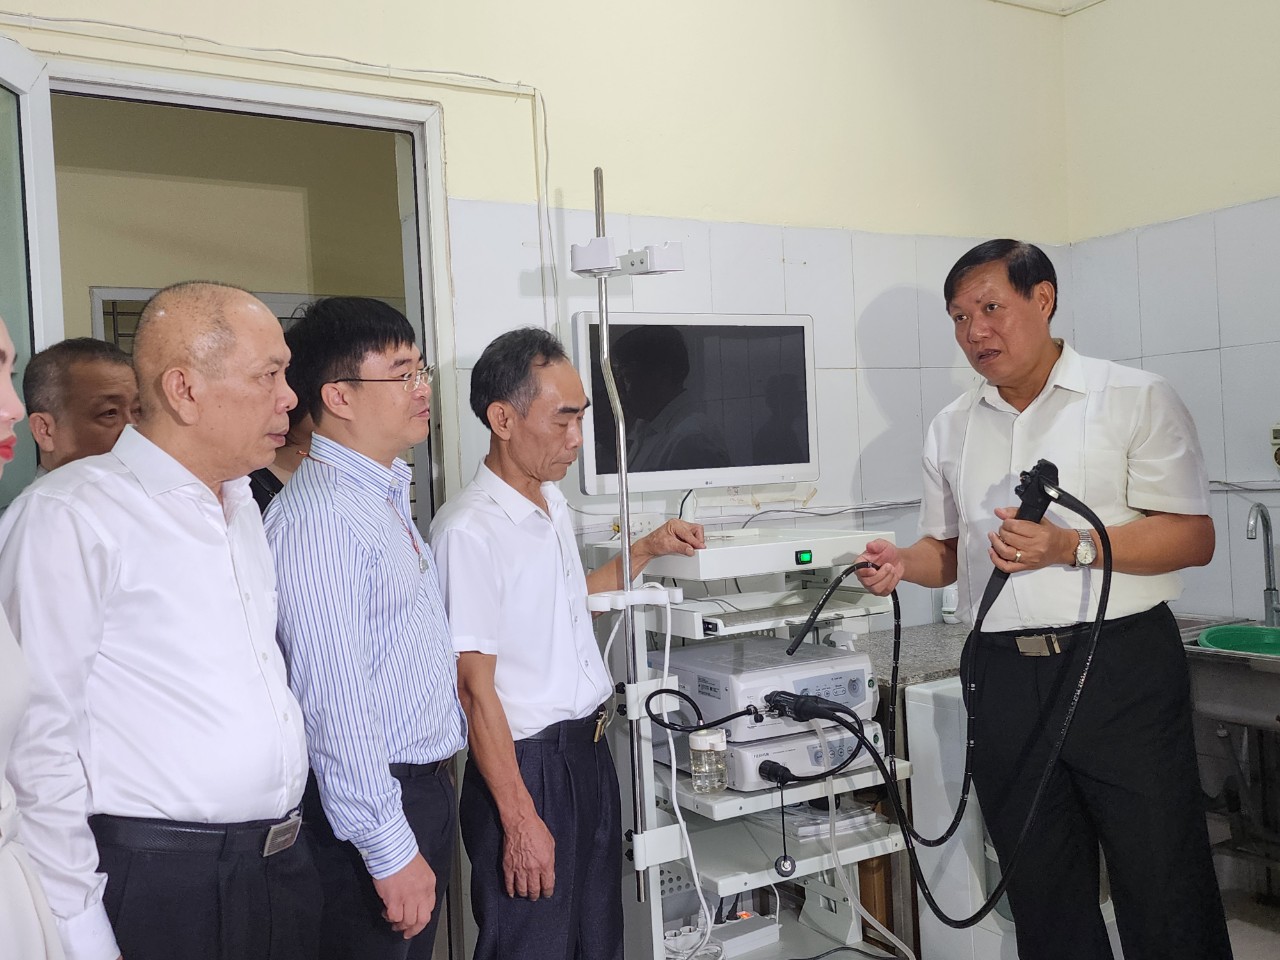 Bệnh viện được đầu tư thêm thiết bị máy móc hiện đại nâng cao chất lượng khám chữa bệnh.